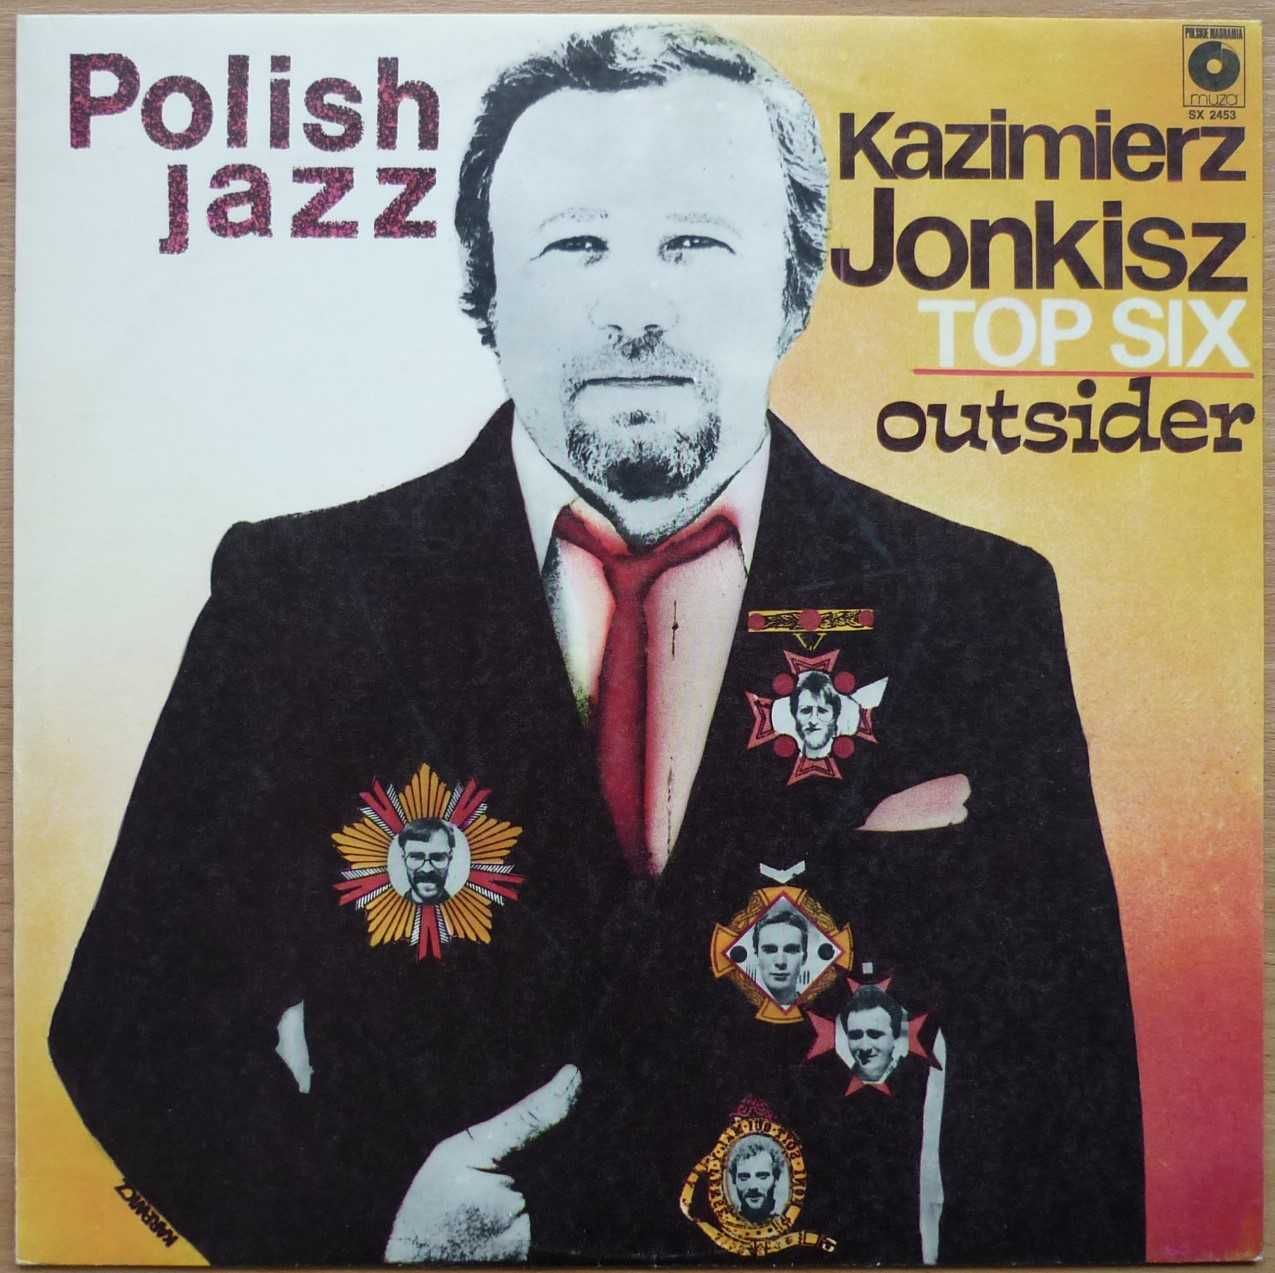 winyl Kazimierz Jonkisz Top Six Outsider